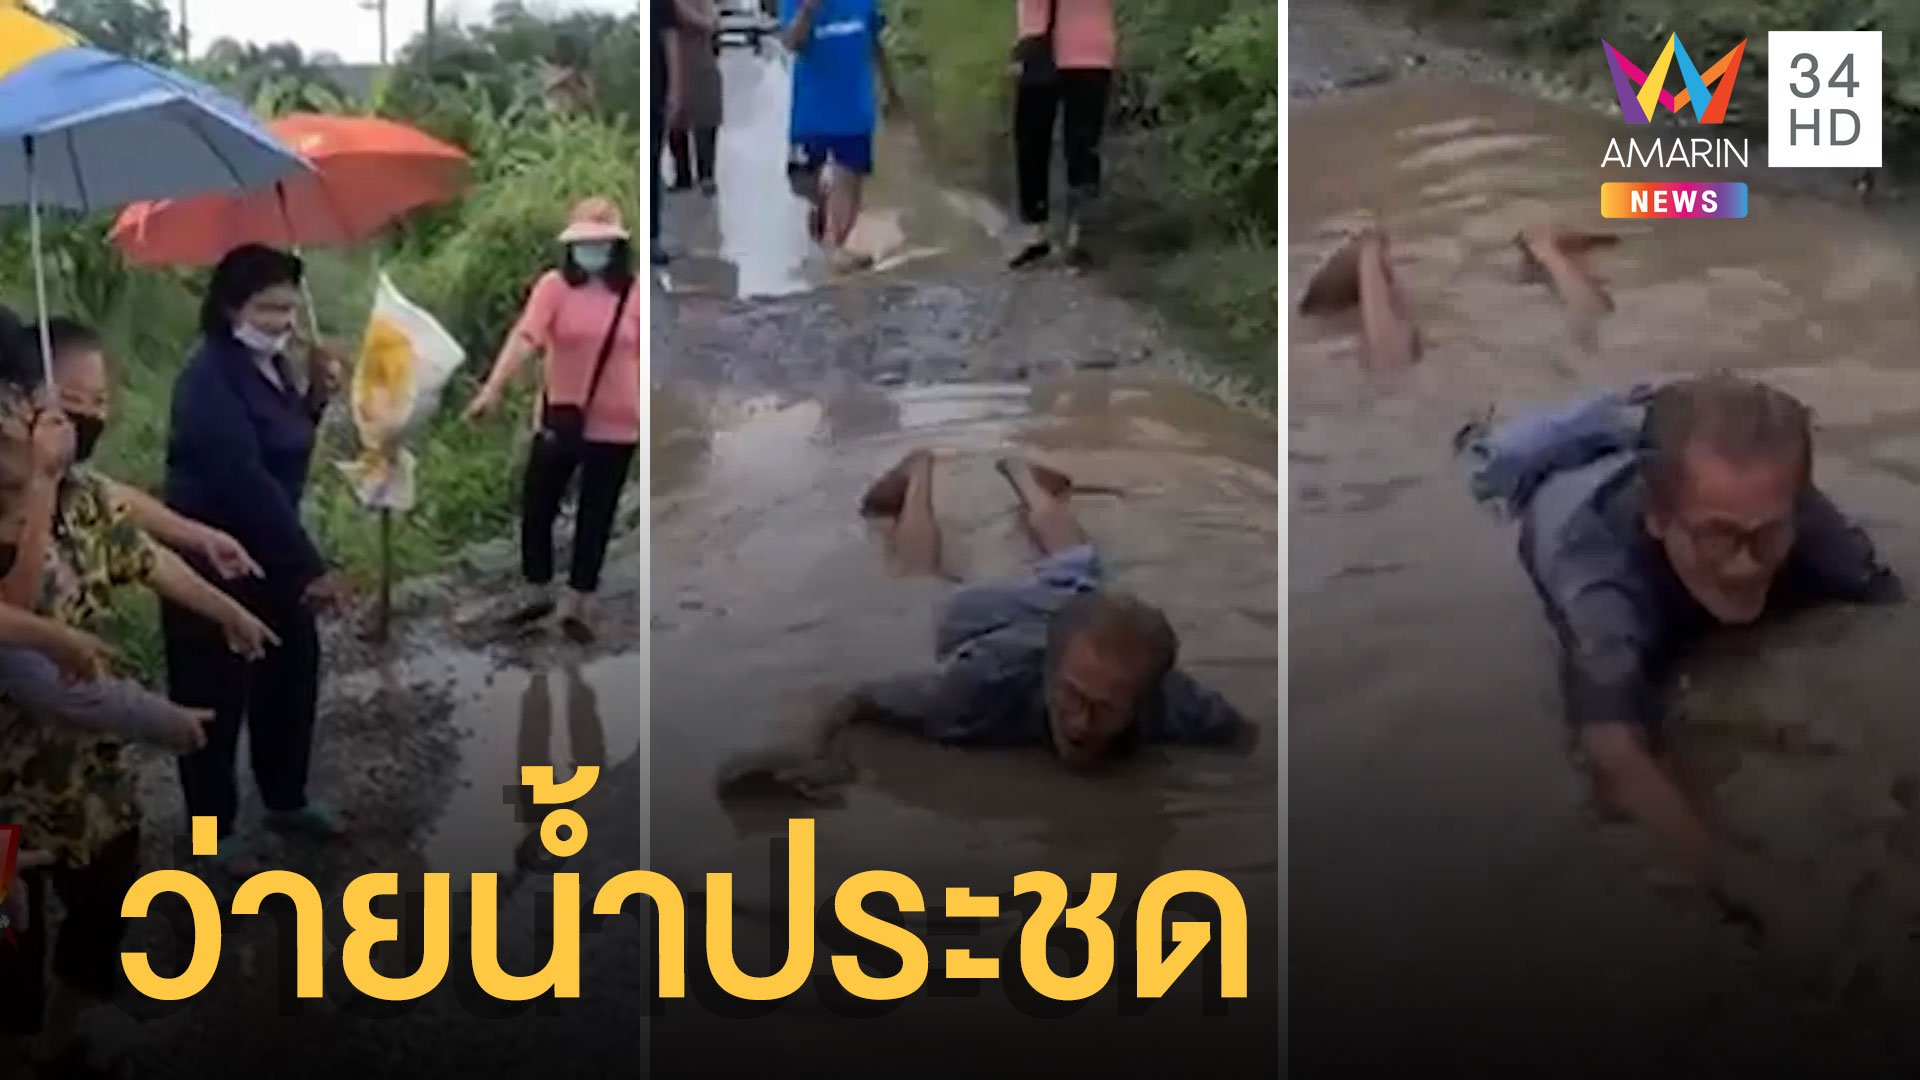 ตาสุดทนว่ายน้ำประชด ถนนเป็นหลุมเป็นบ่อ น้ำขังเพียบชาวบ้านเดือดร้อน | ข่าวอรุณอมรินทร์ | 23 พ.ค. 65 | AMARIN TVHD34